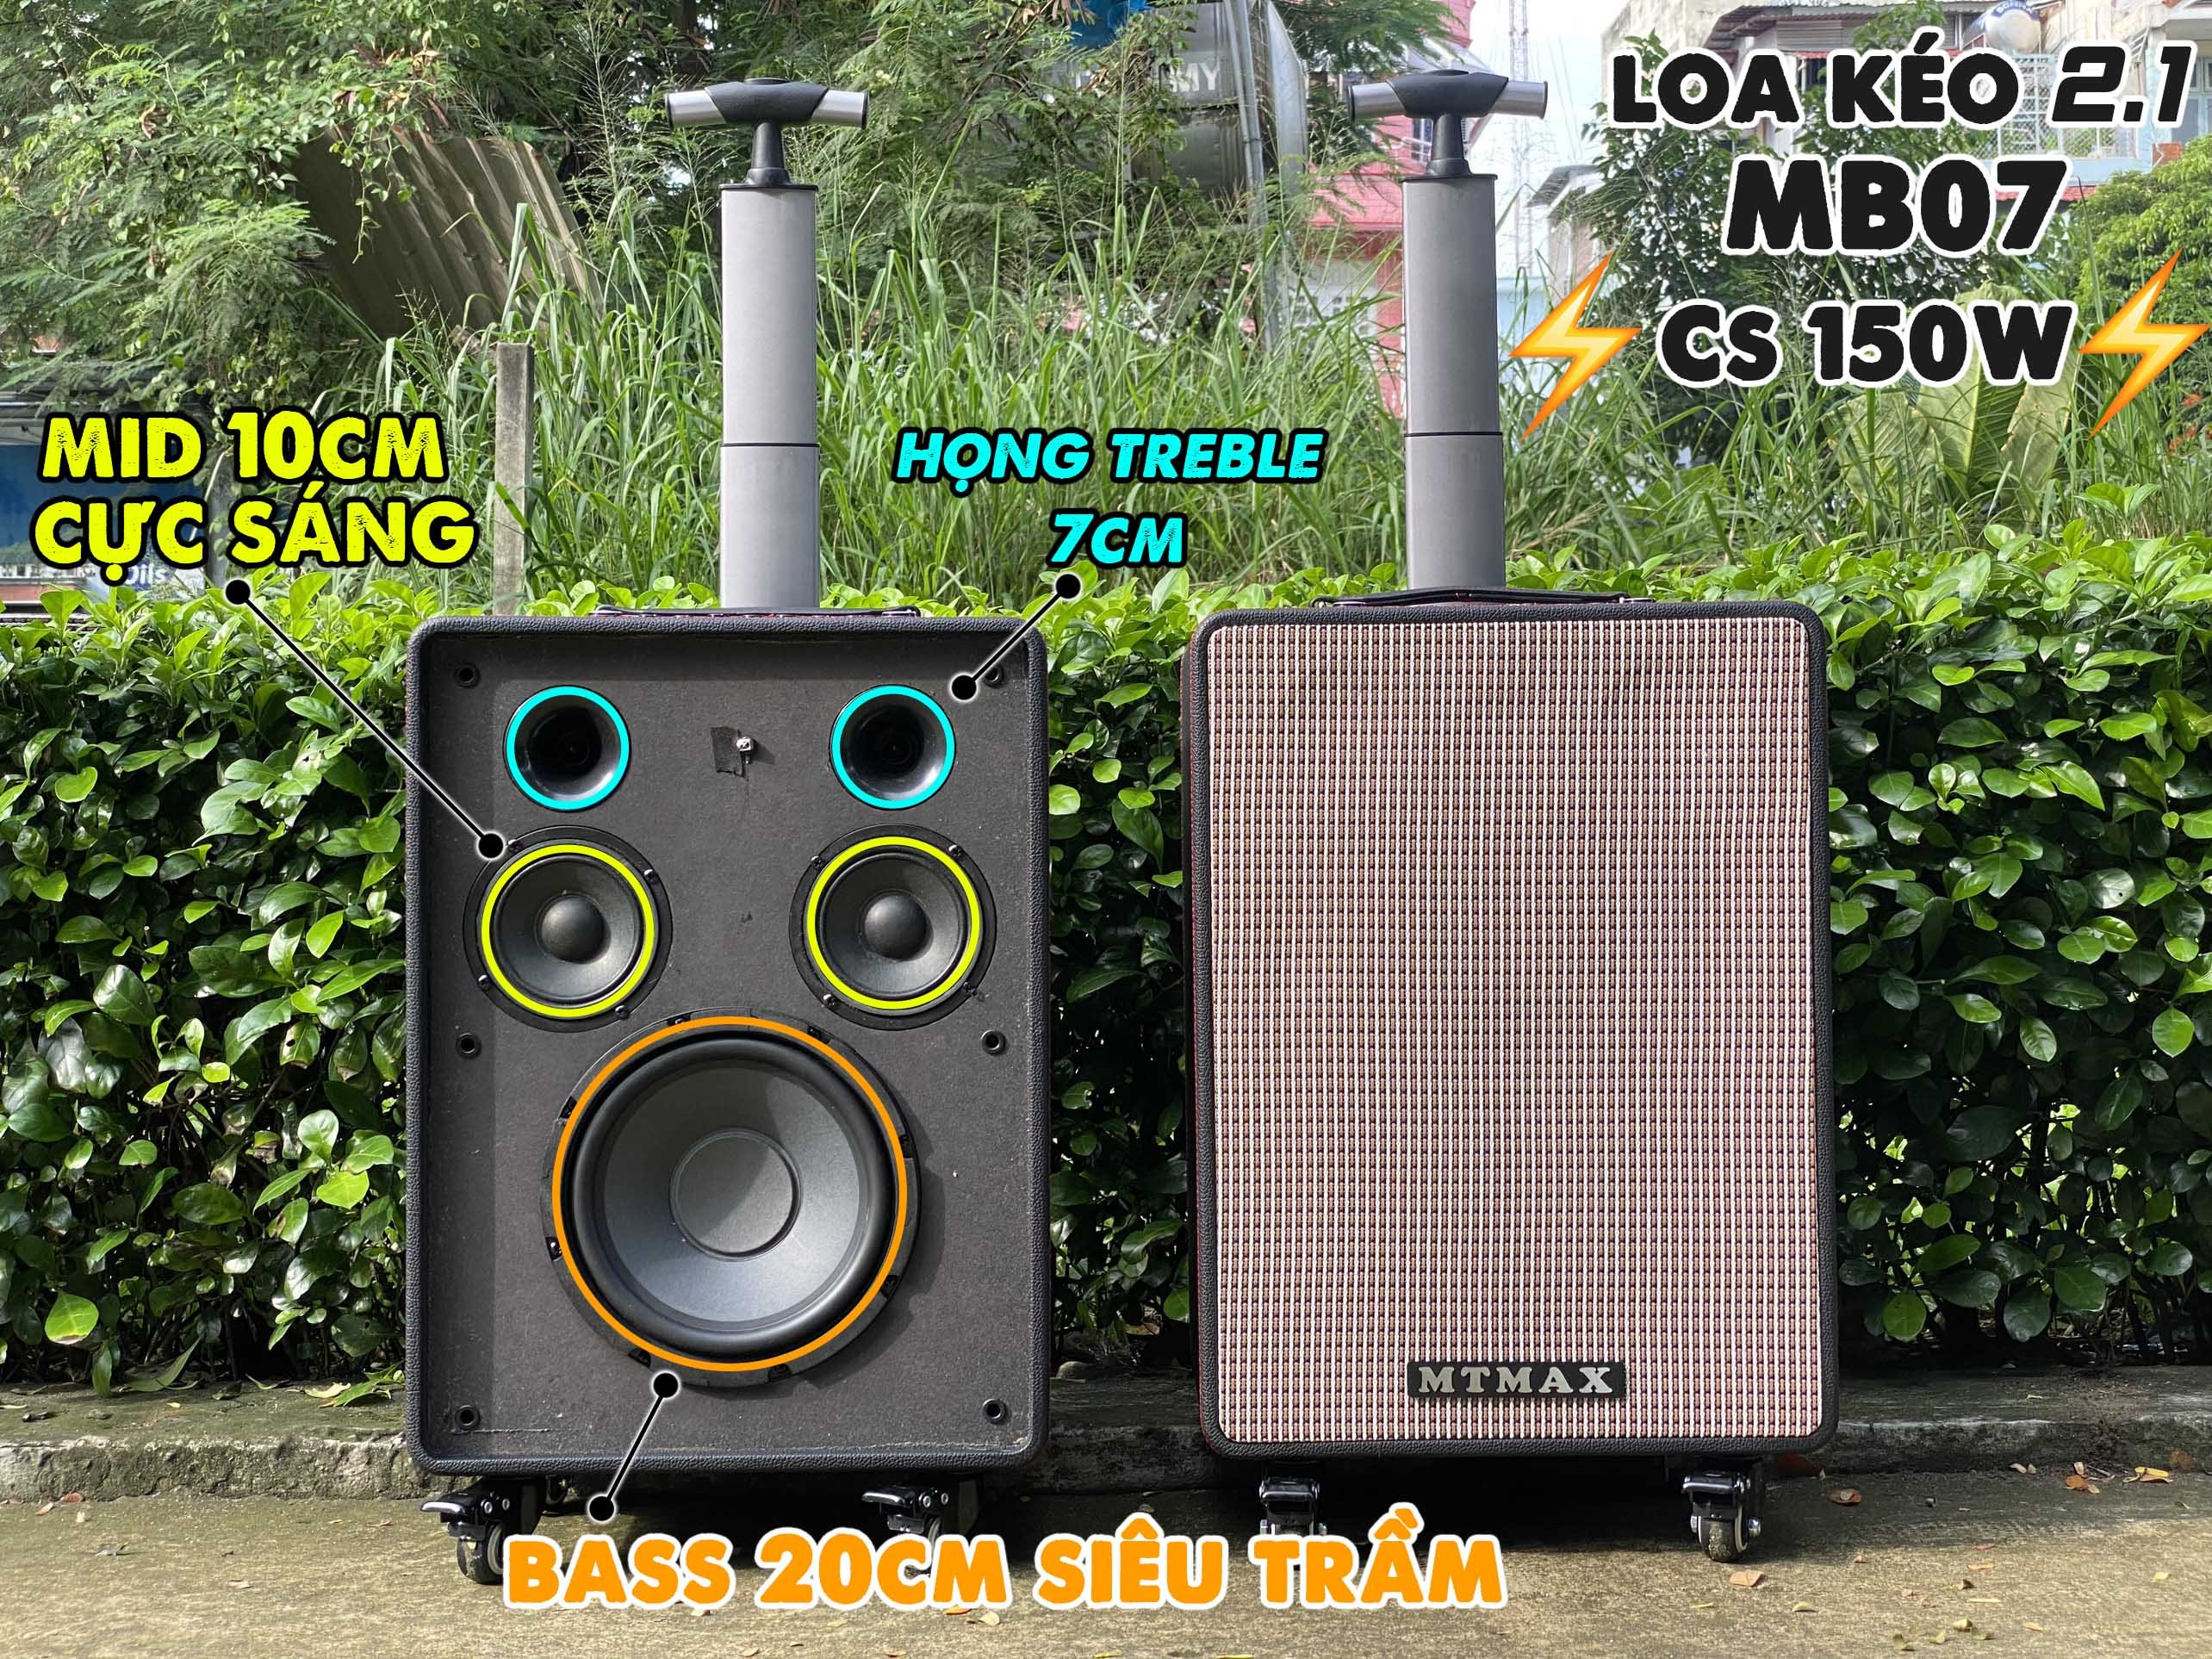 Loa kéo 2.1 cao cấp MTMAX MB07 karaoke - nghe nhạc cực đỉnh kèm 2 mico không dây có đủ hiệu ứng độc lạ tiện lợi xách tay kéo đi du lịch bảo hành 12 tháng hàng chính hãng